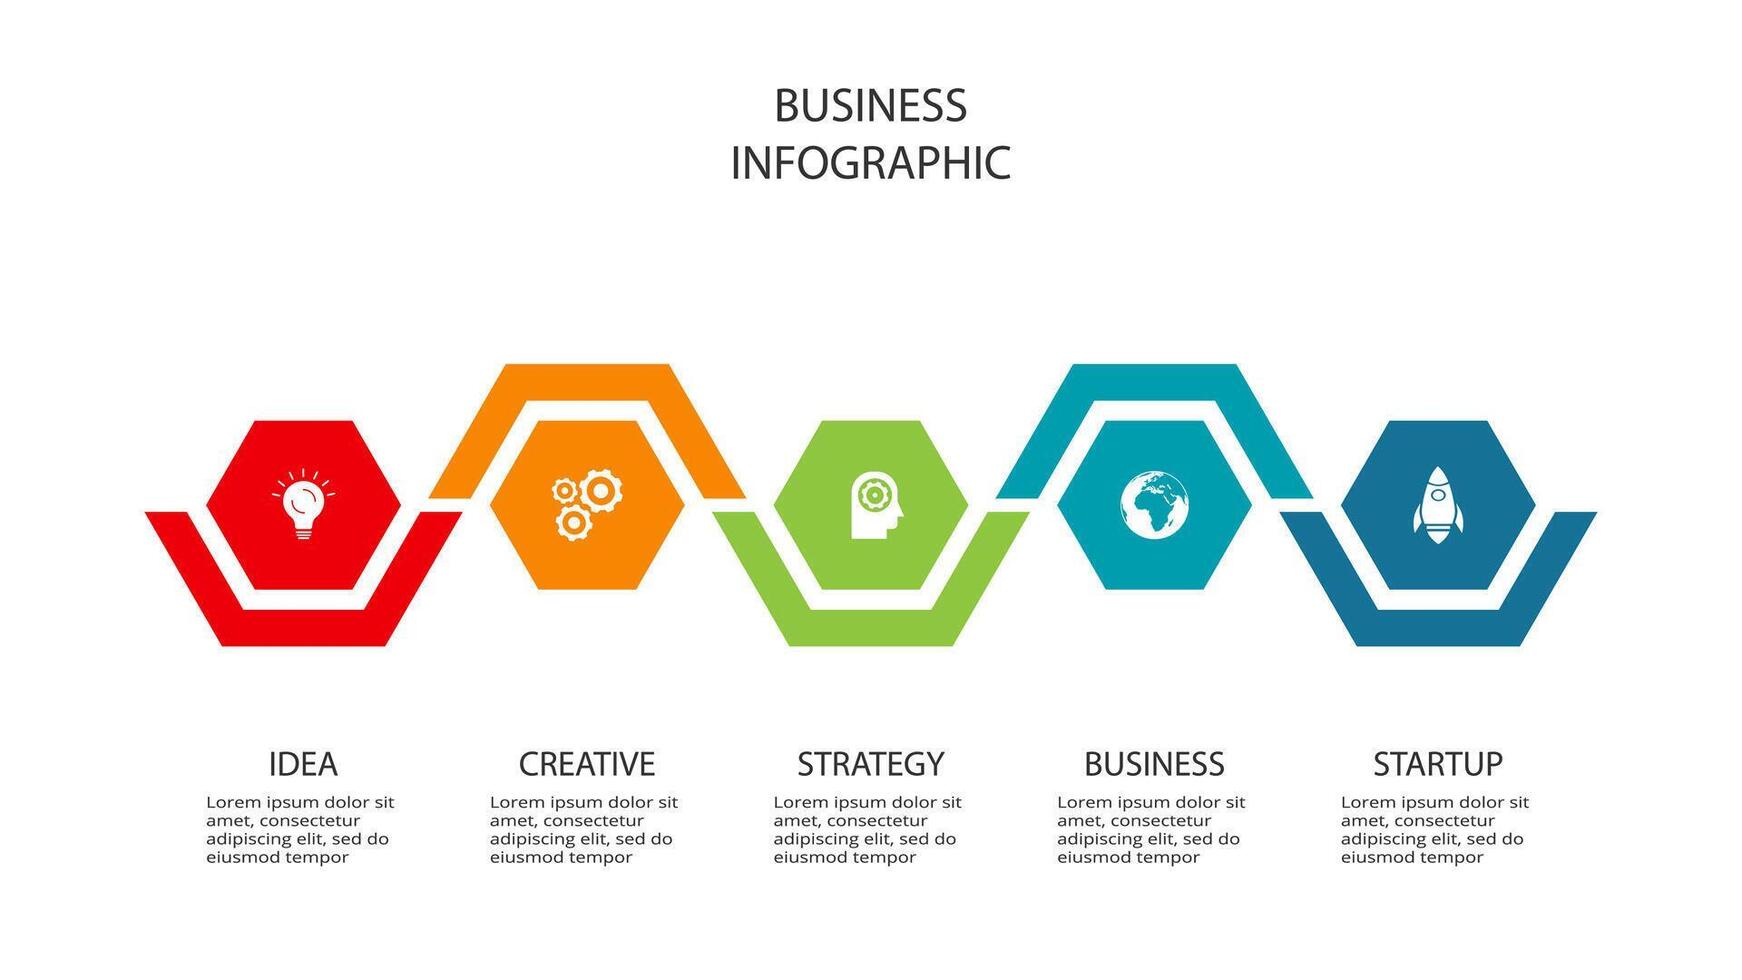 kreativ begrepp för infographic med 5 steg, alternativ, delar eller processer. företag data visualisering. vektor